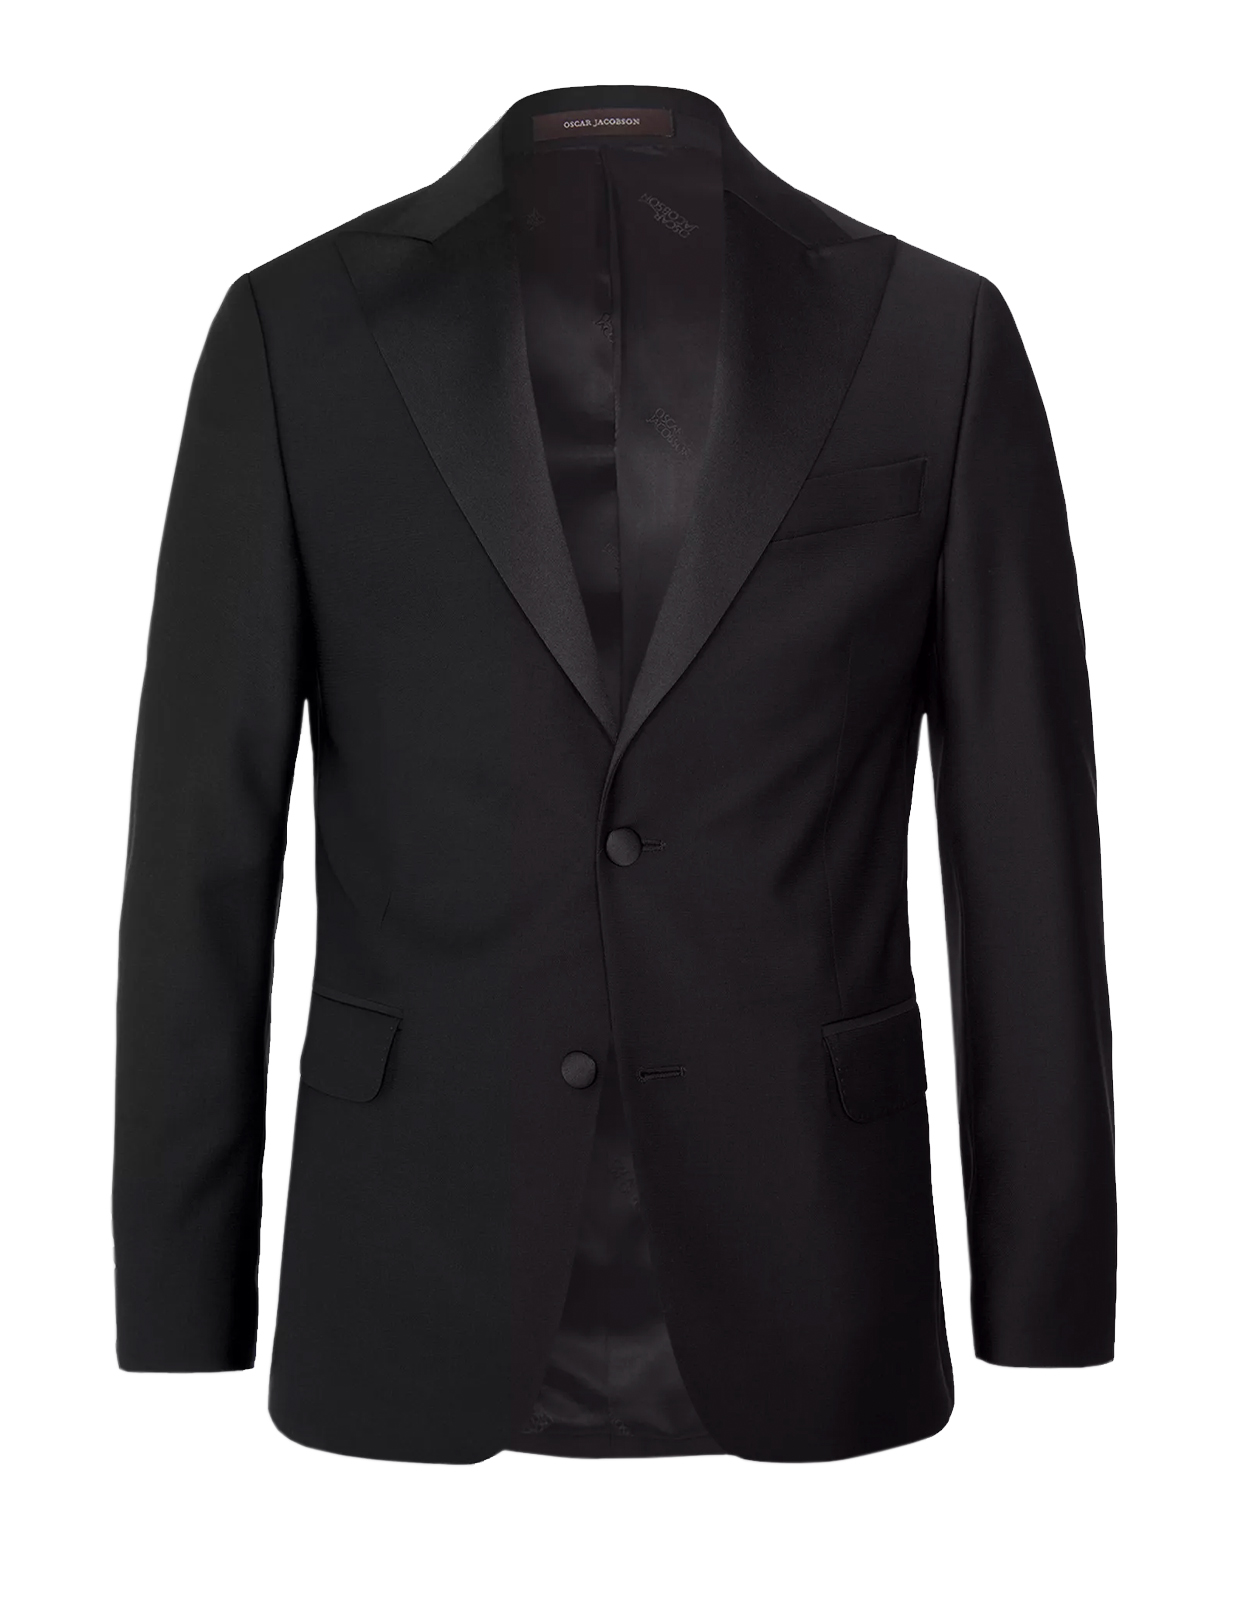 Elder Tuxedo Jacket Mix & Match Black Stl 152